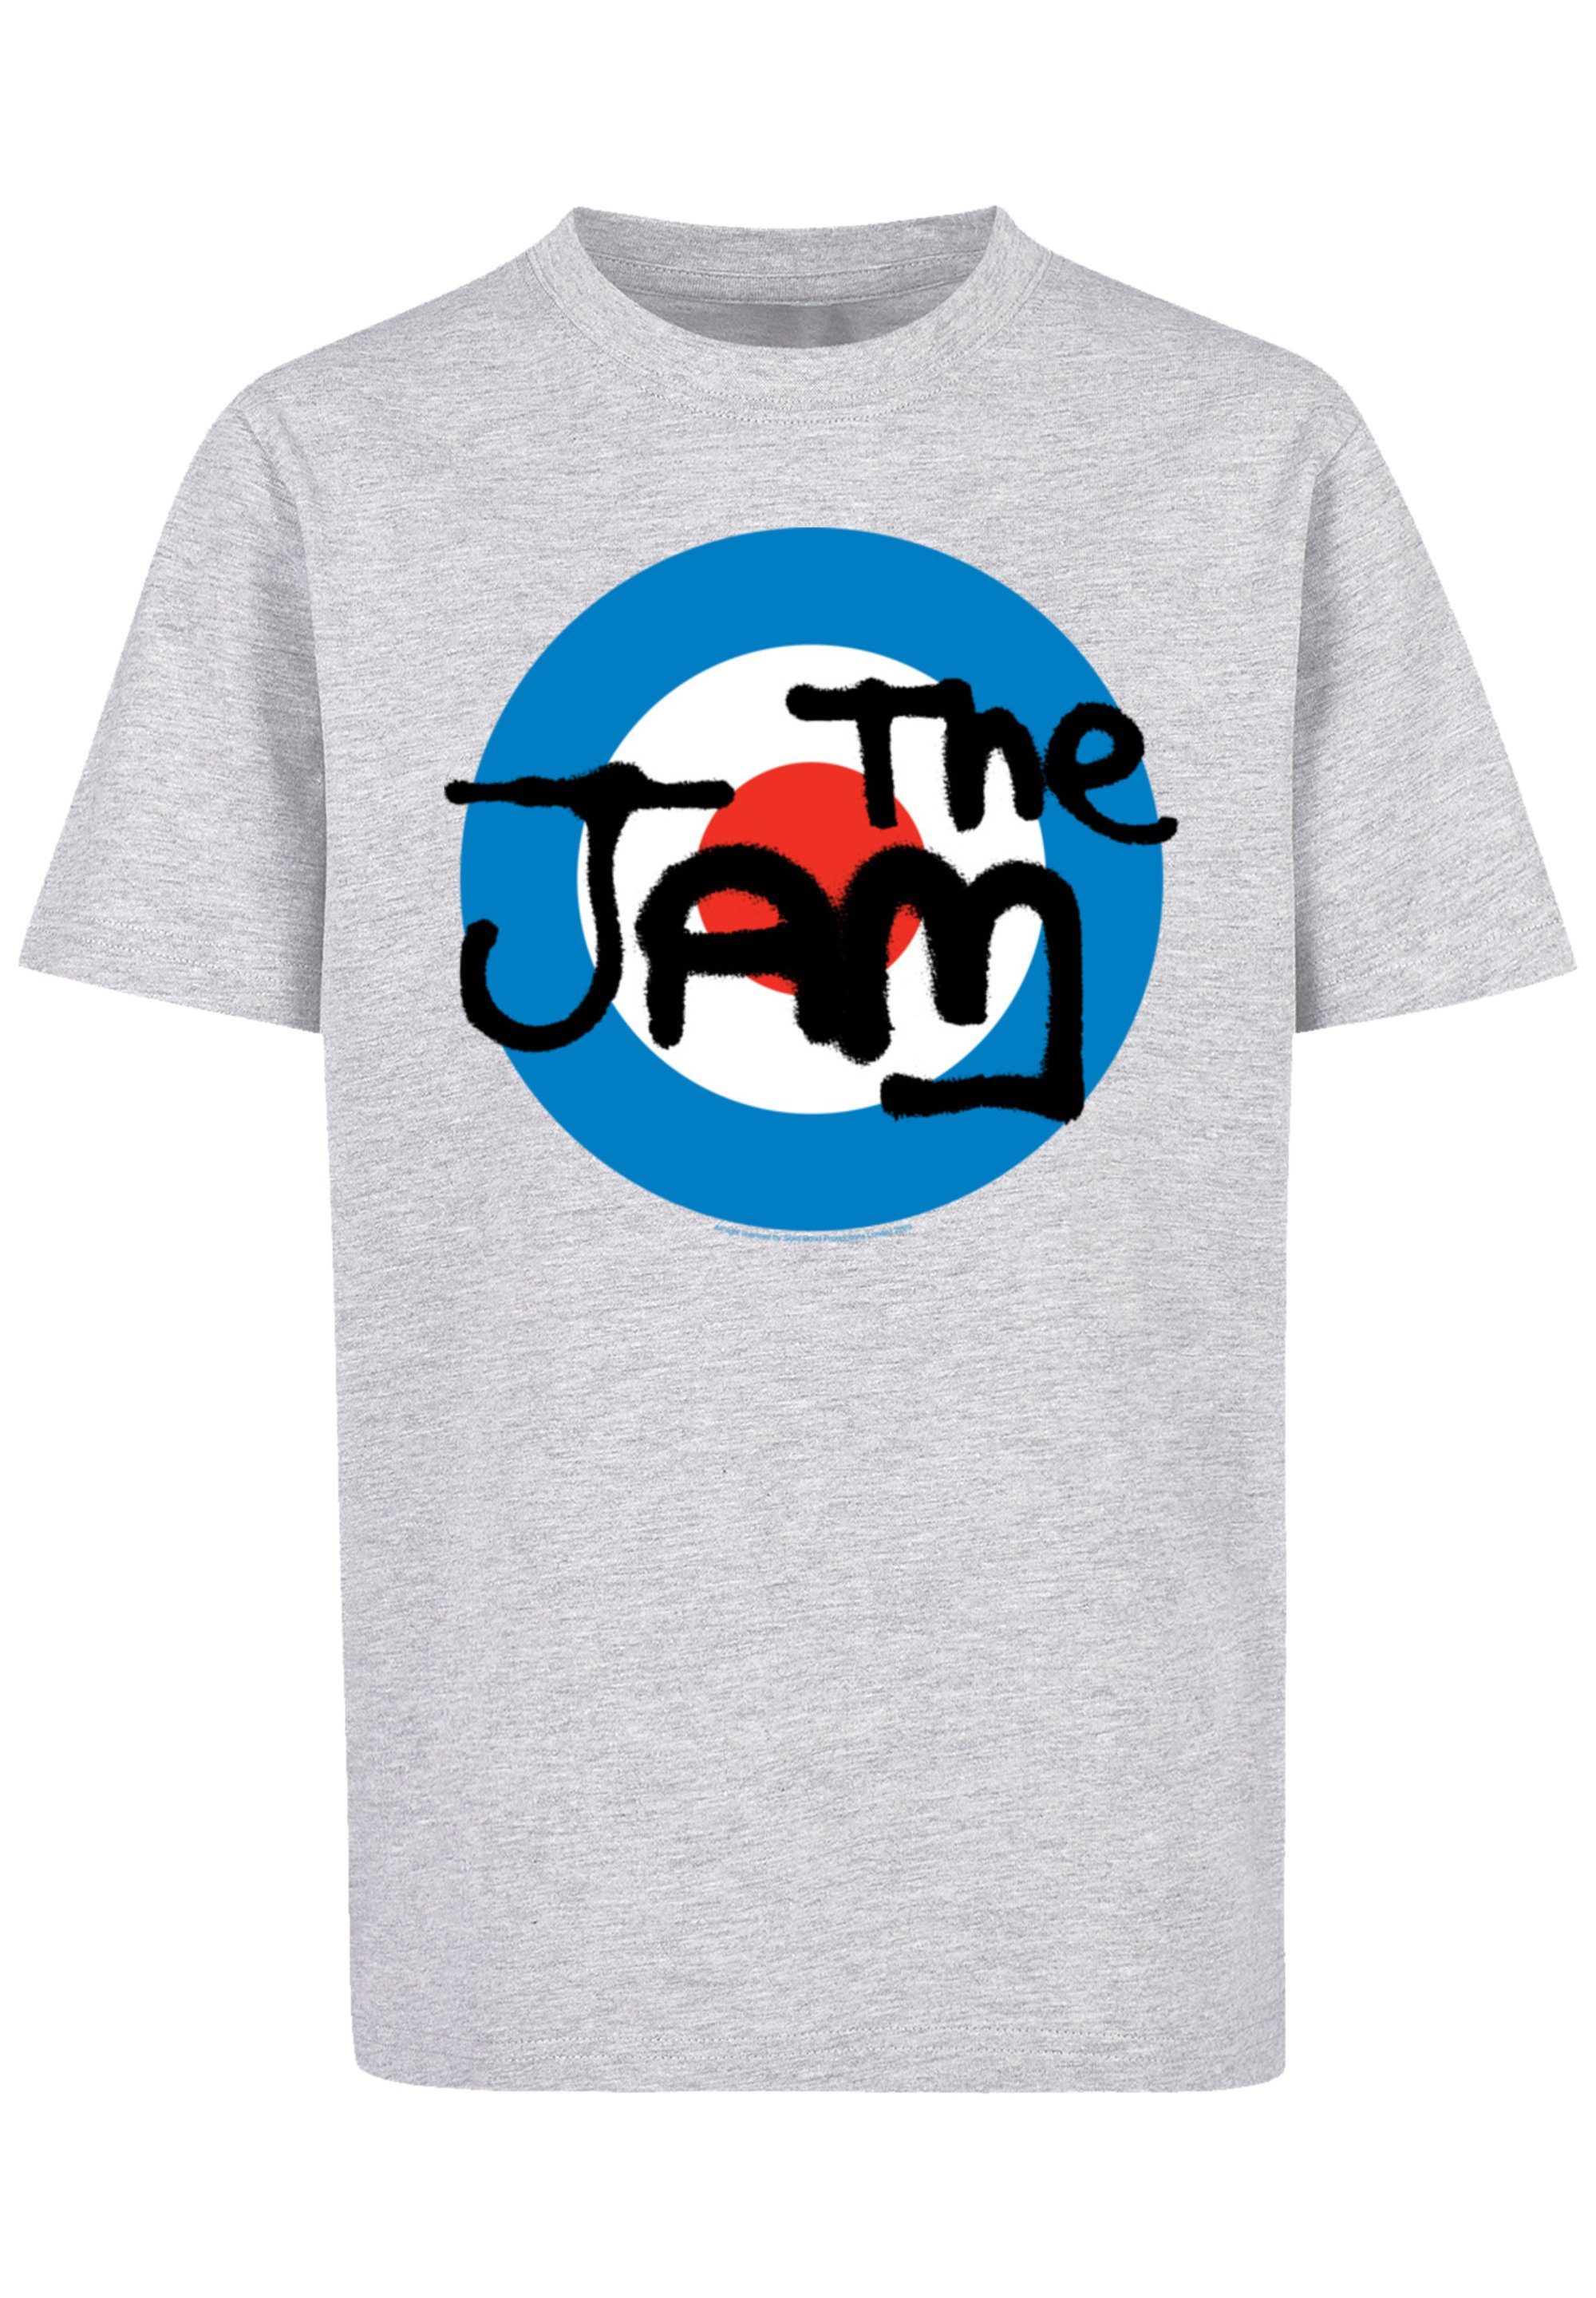 Band The Qualität, mit Jam Tragekomfort Classic Baumwollstoff Premium Logo hohem F4NT4STIC weicher T-Shirt Sehr